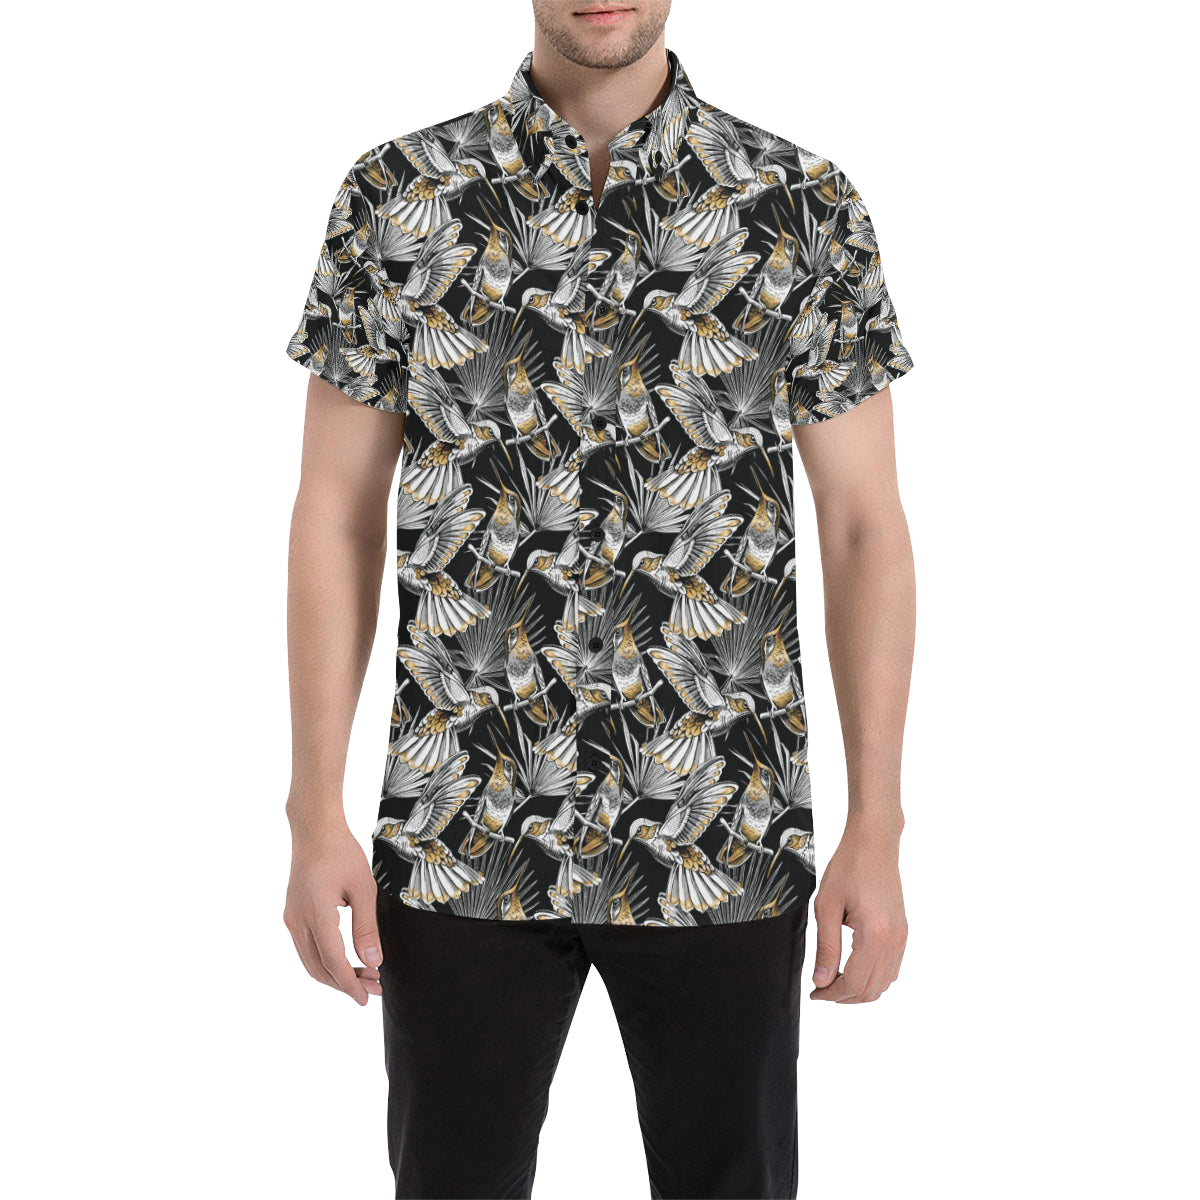 Hummingbird Gold Design Themed Print Men's Short Sleeve Button Up Shirt